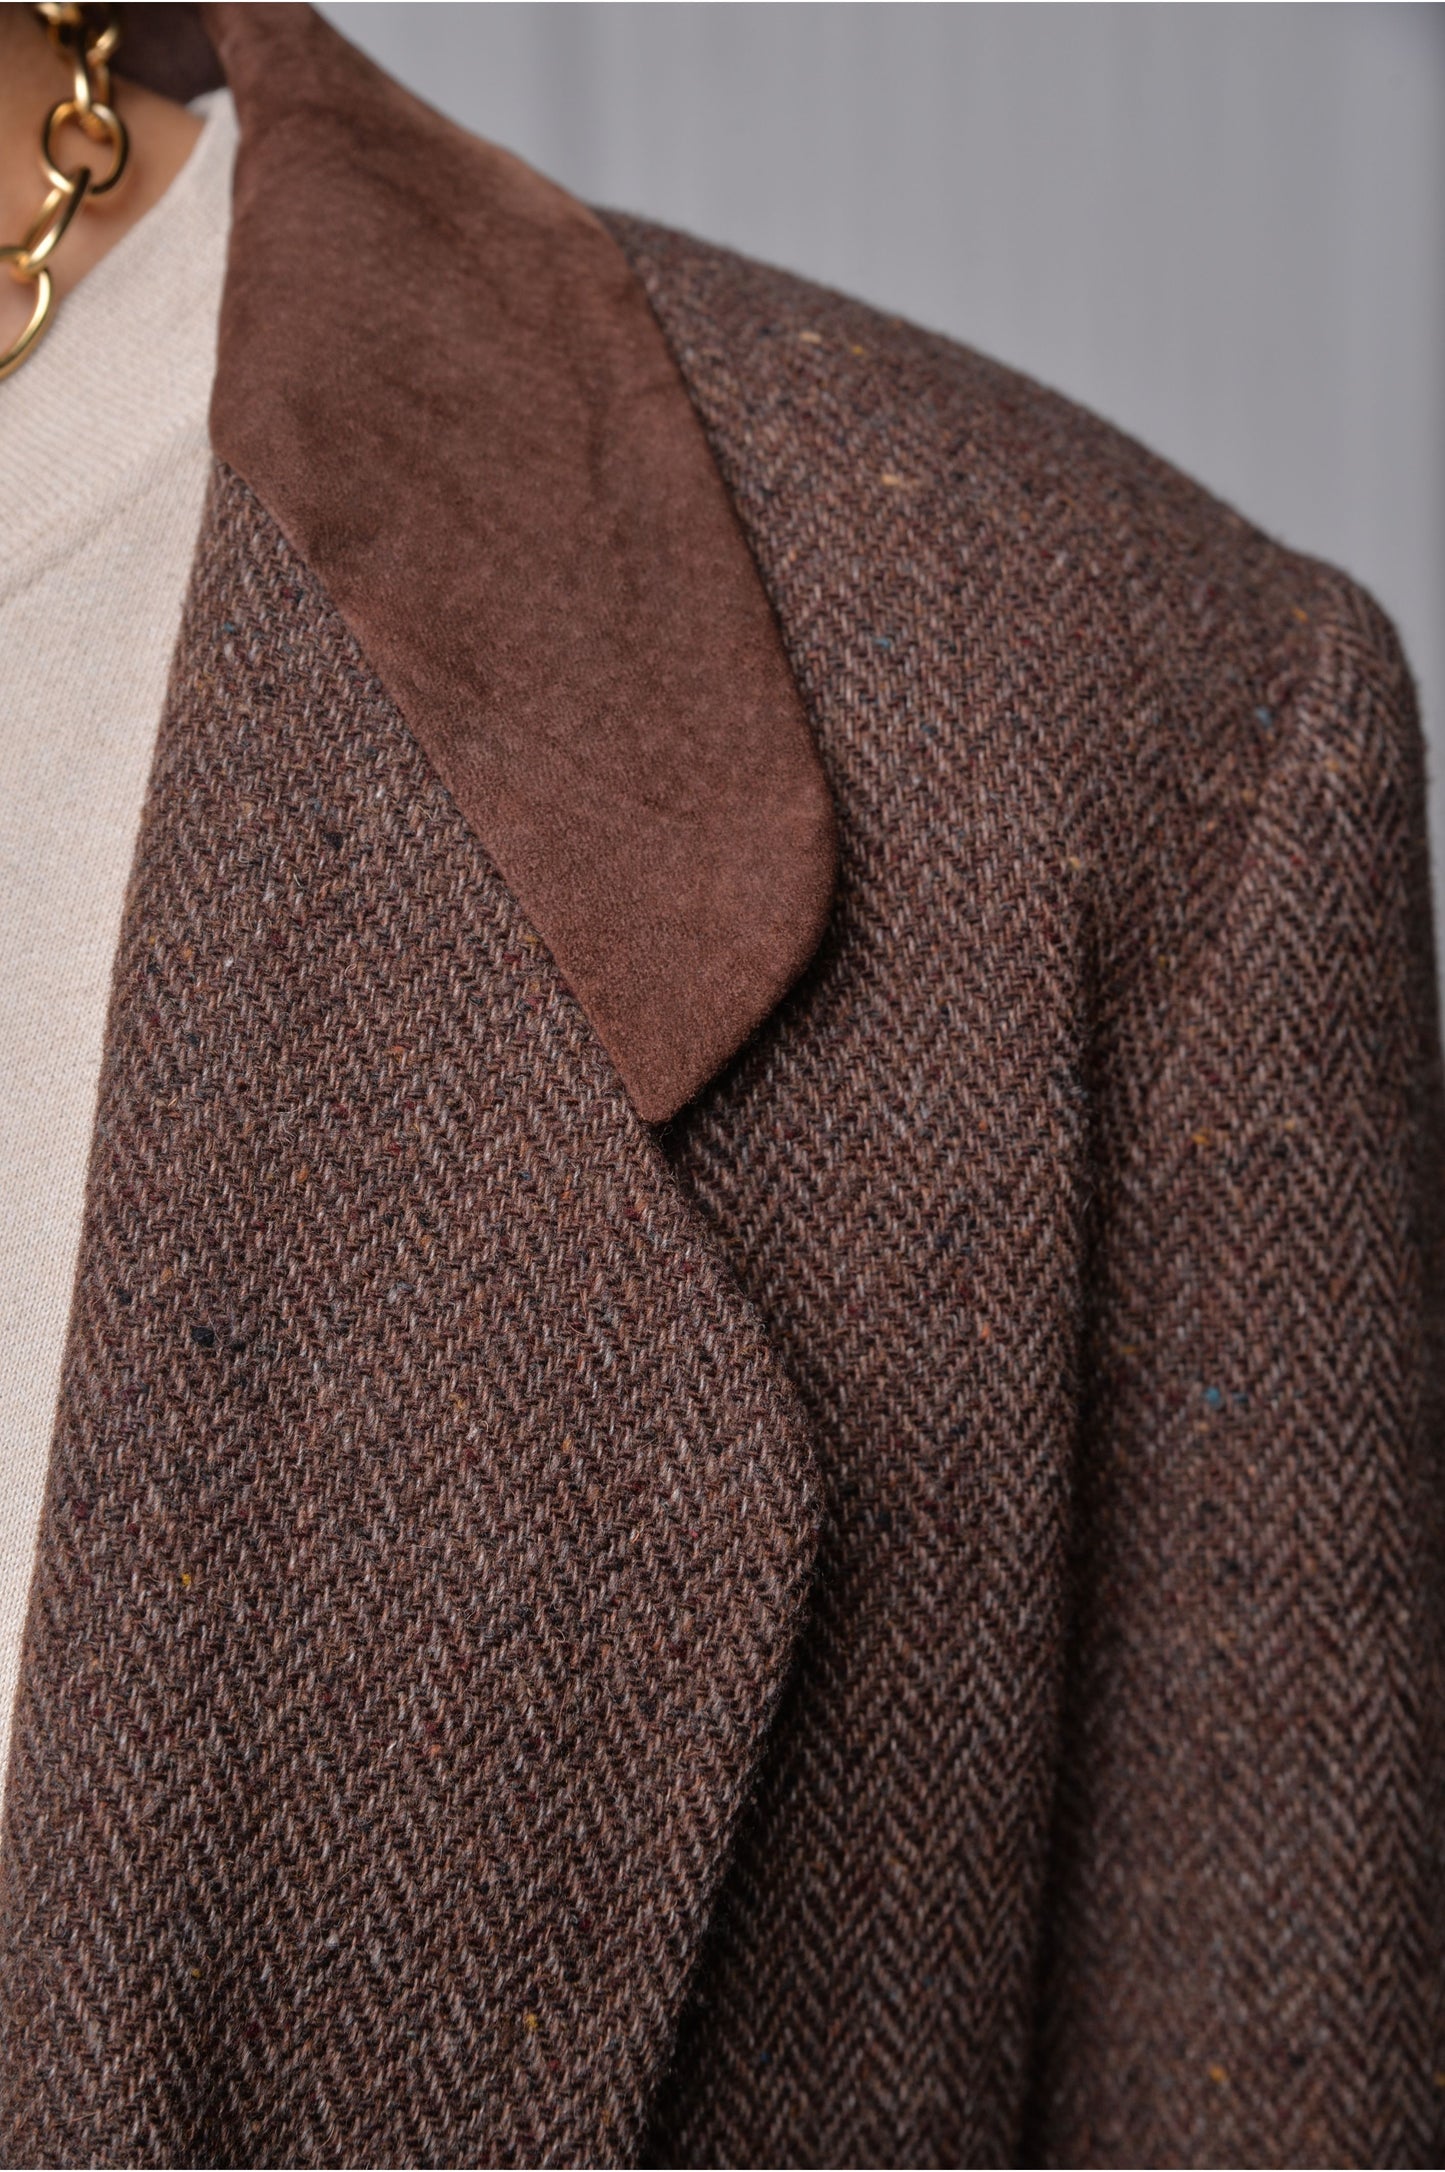 Brown Tweed Wool Blazer